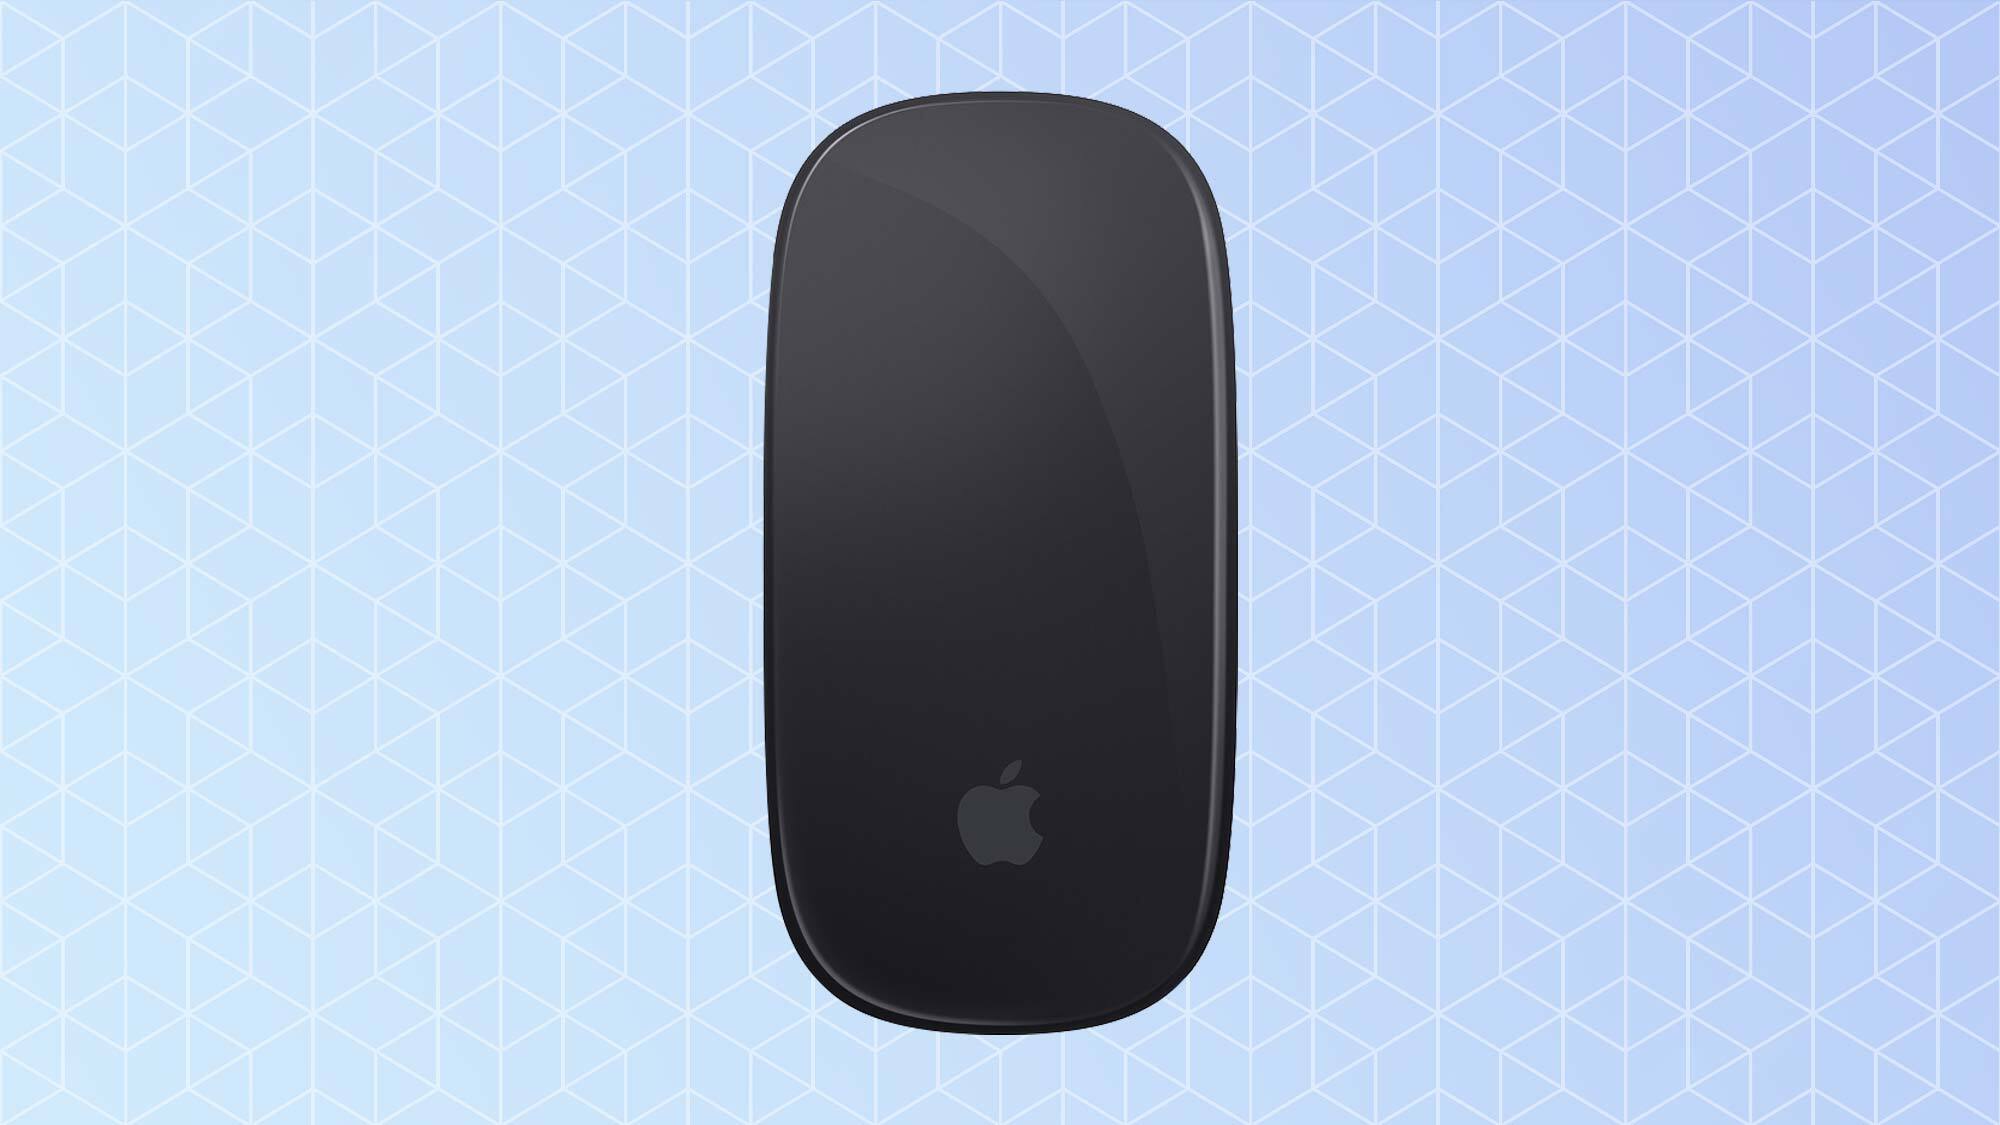 Melhor mouse: mouse mágico da Apple 2